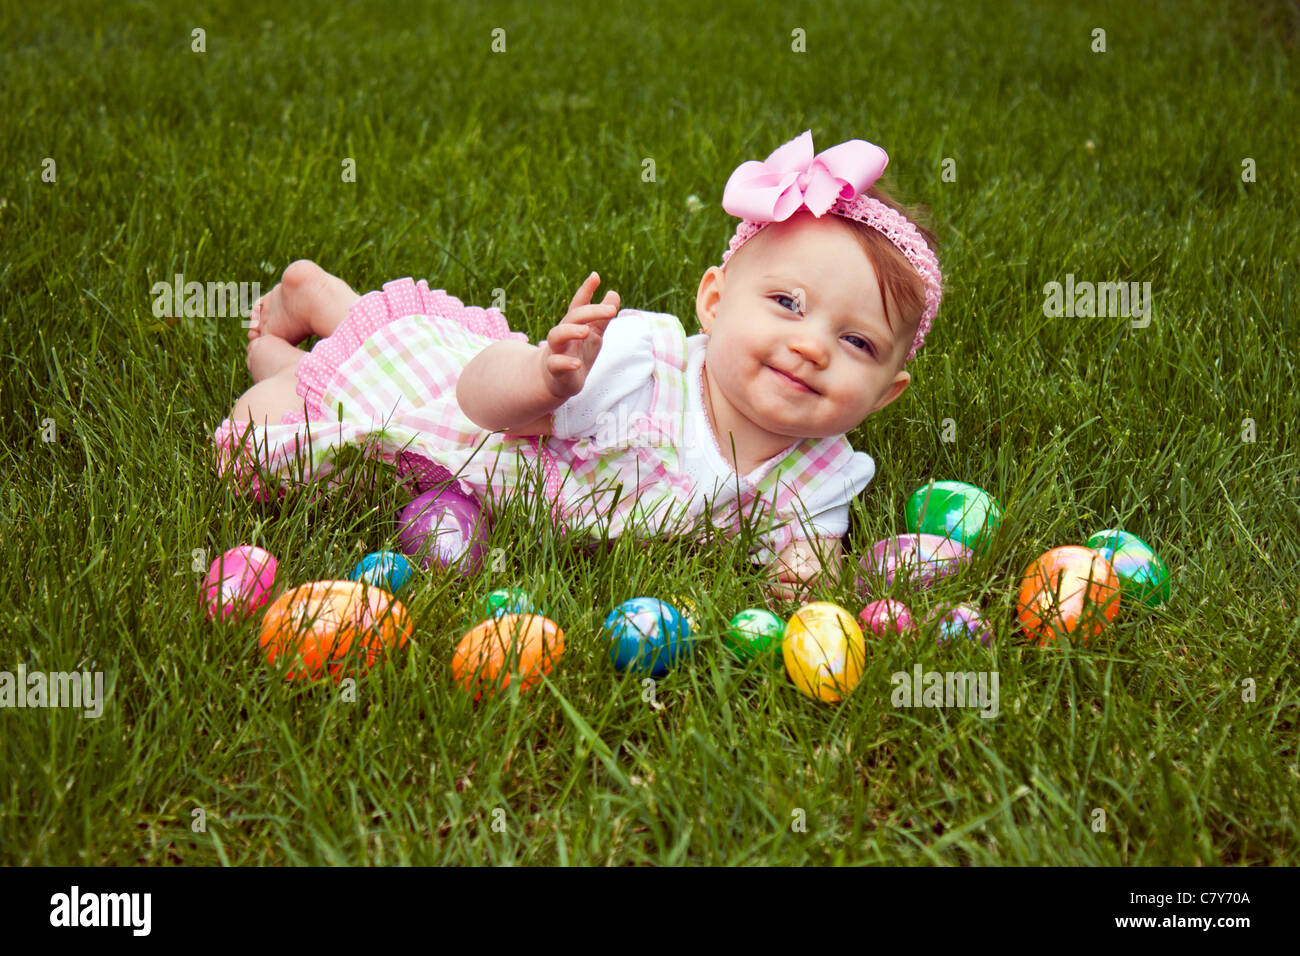 Hermoso bebé tendido en la hierba con un surtido de huevos de Pascua de colores Foto de stock